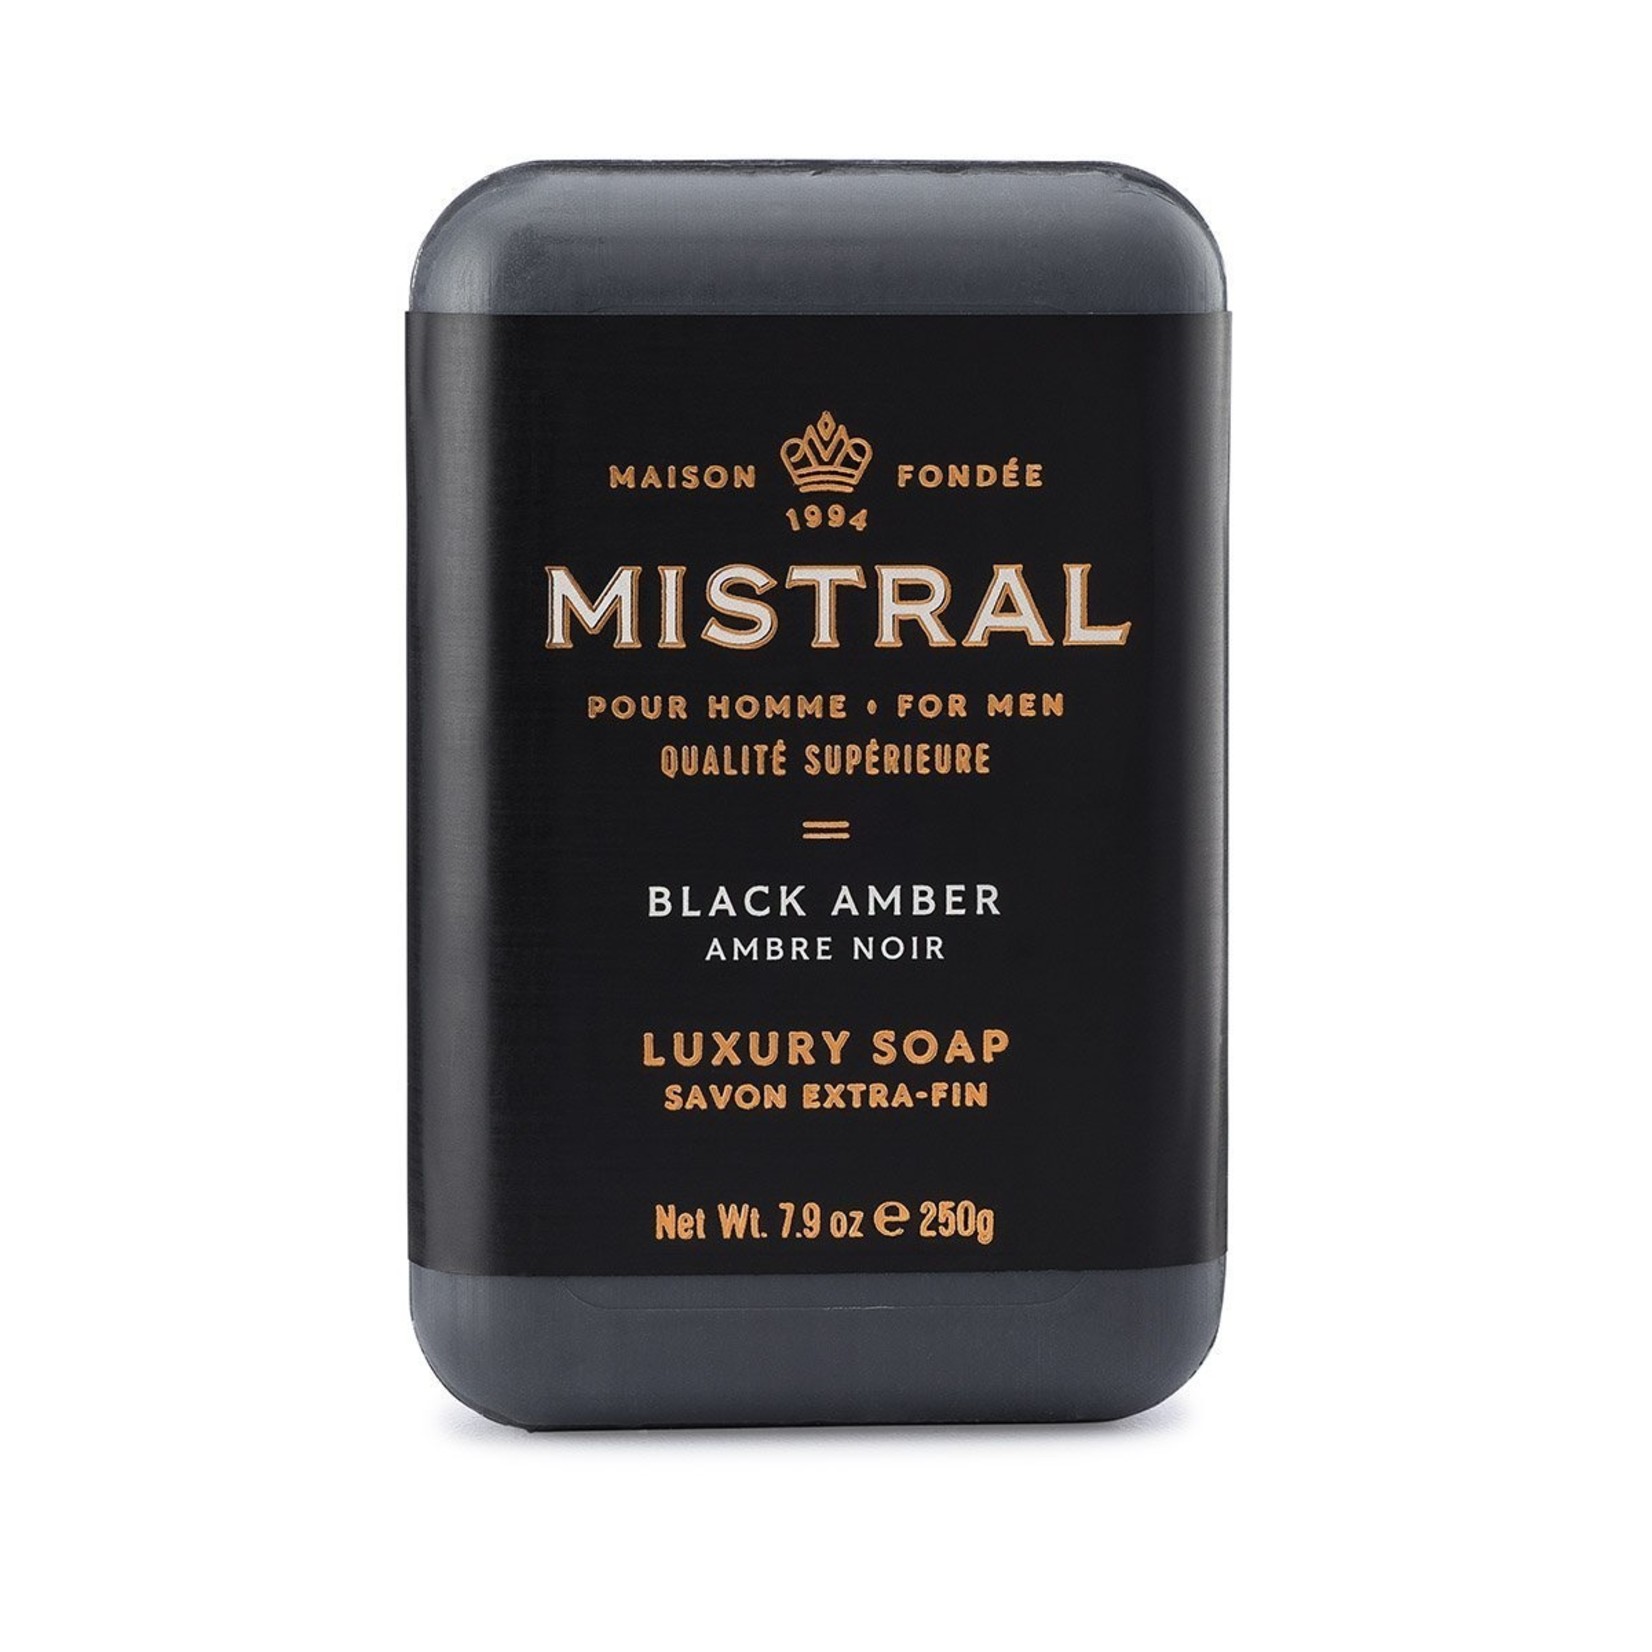 Mistral Men's Bar Soap Collection